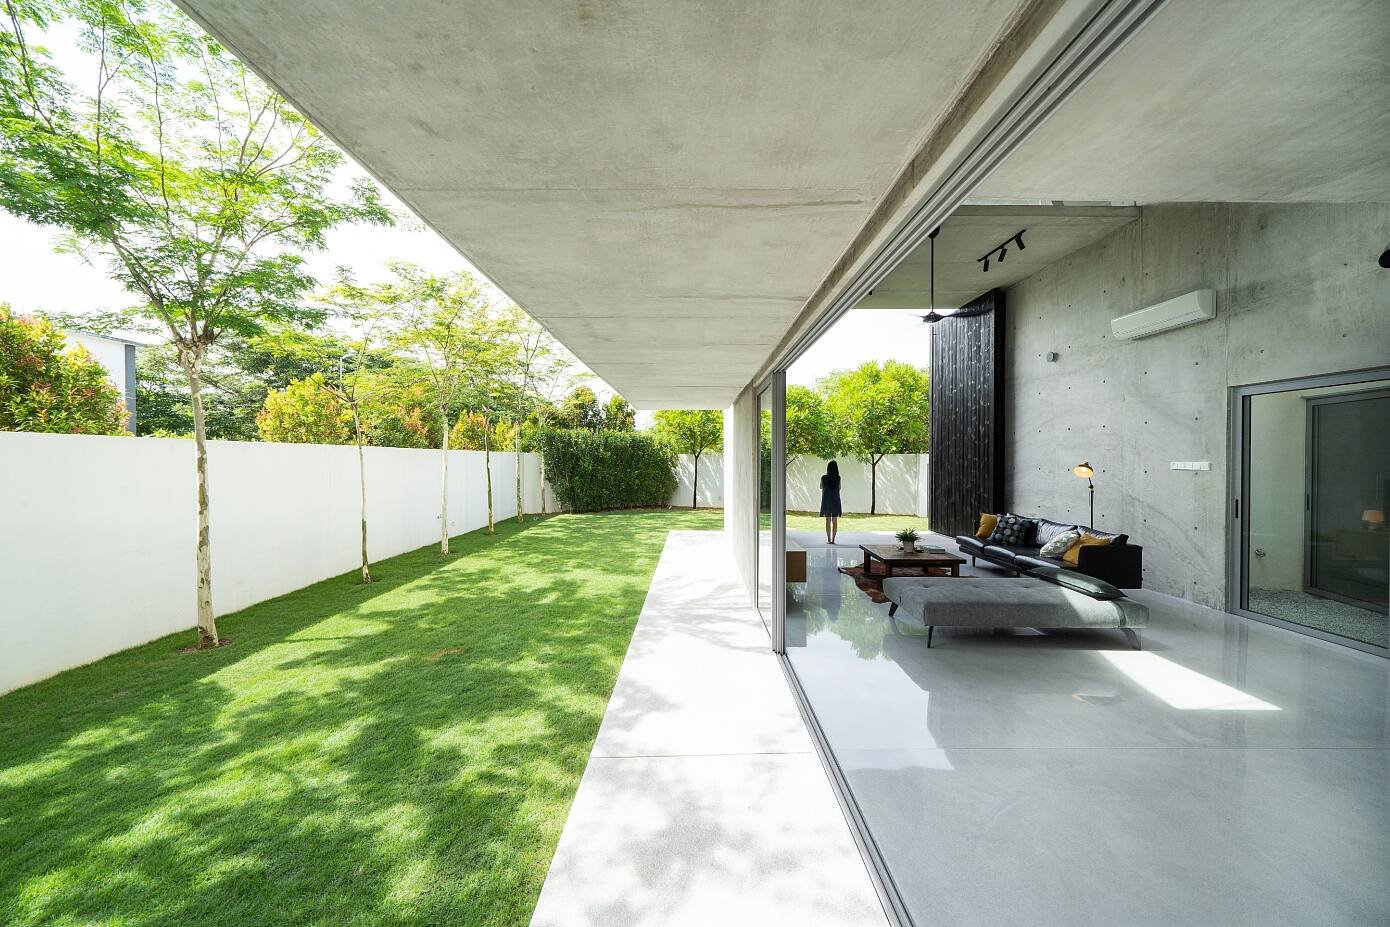 Casa moderna de hormigon en Taiwan salon abierto al jardin